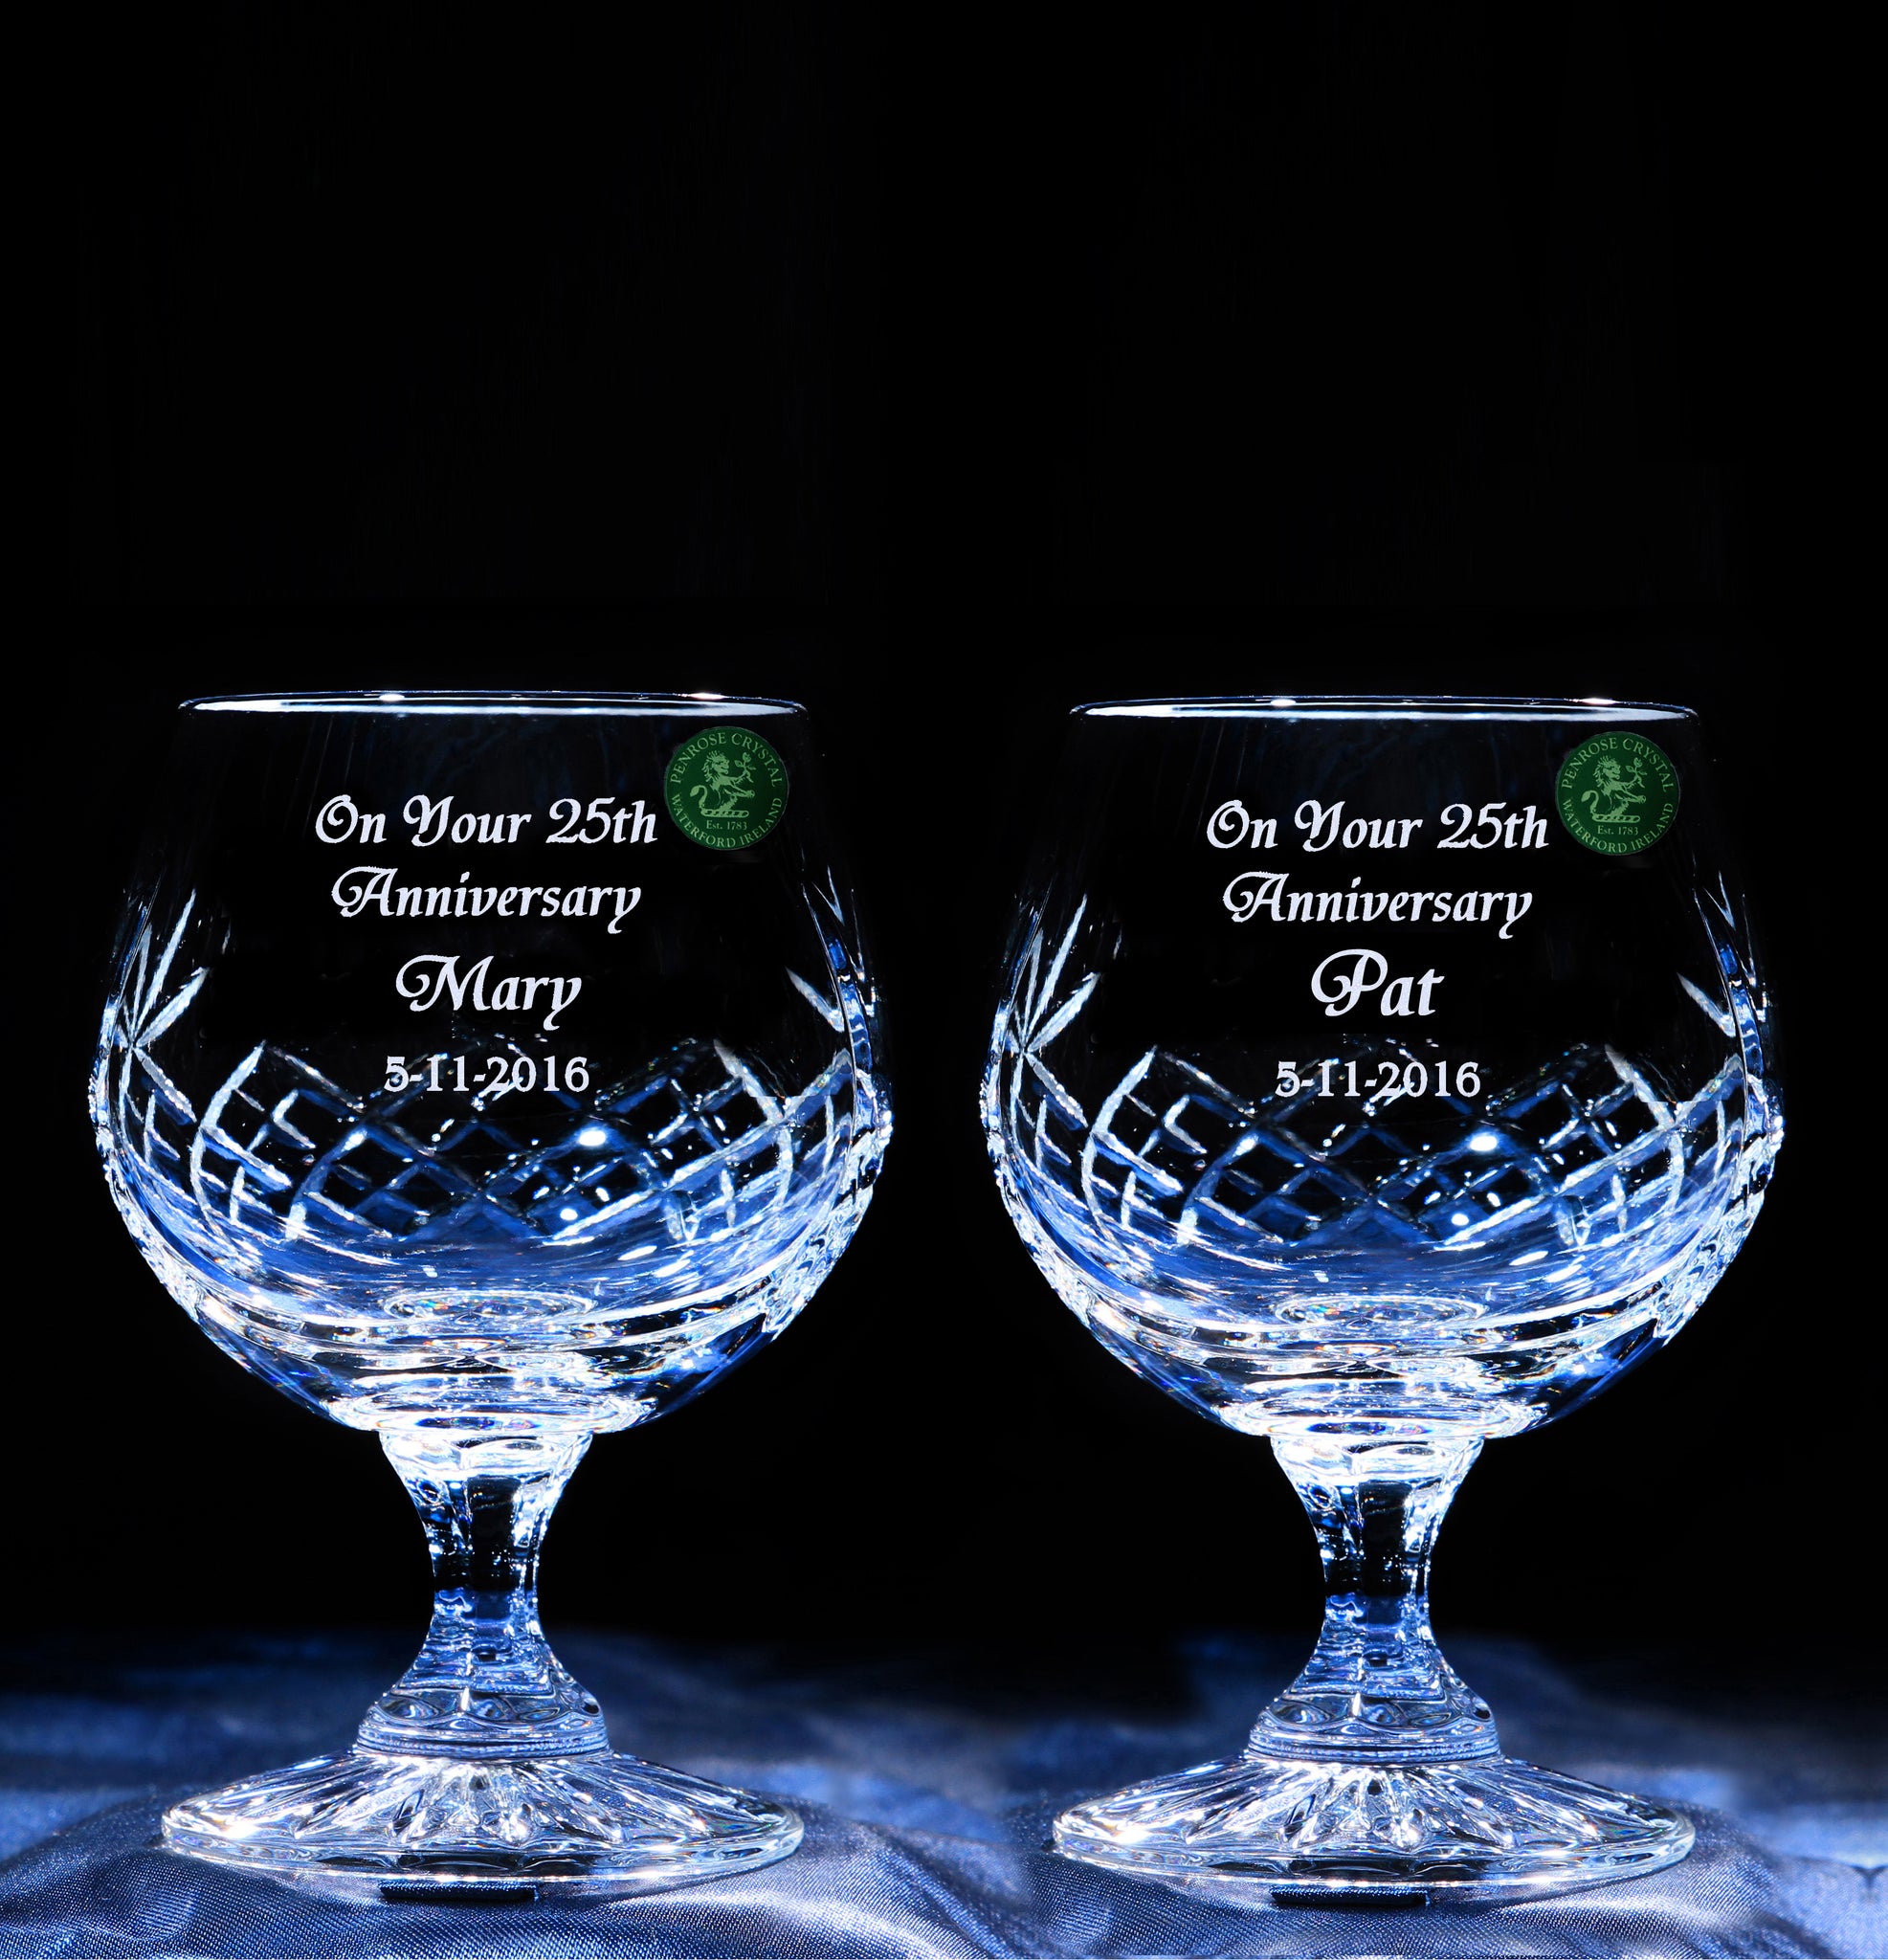 Pair of Brandy Glasses - Penrose Crystal Waterford